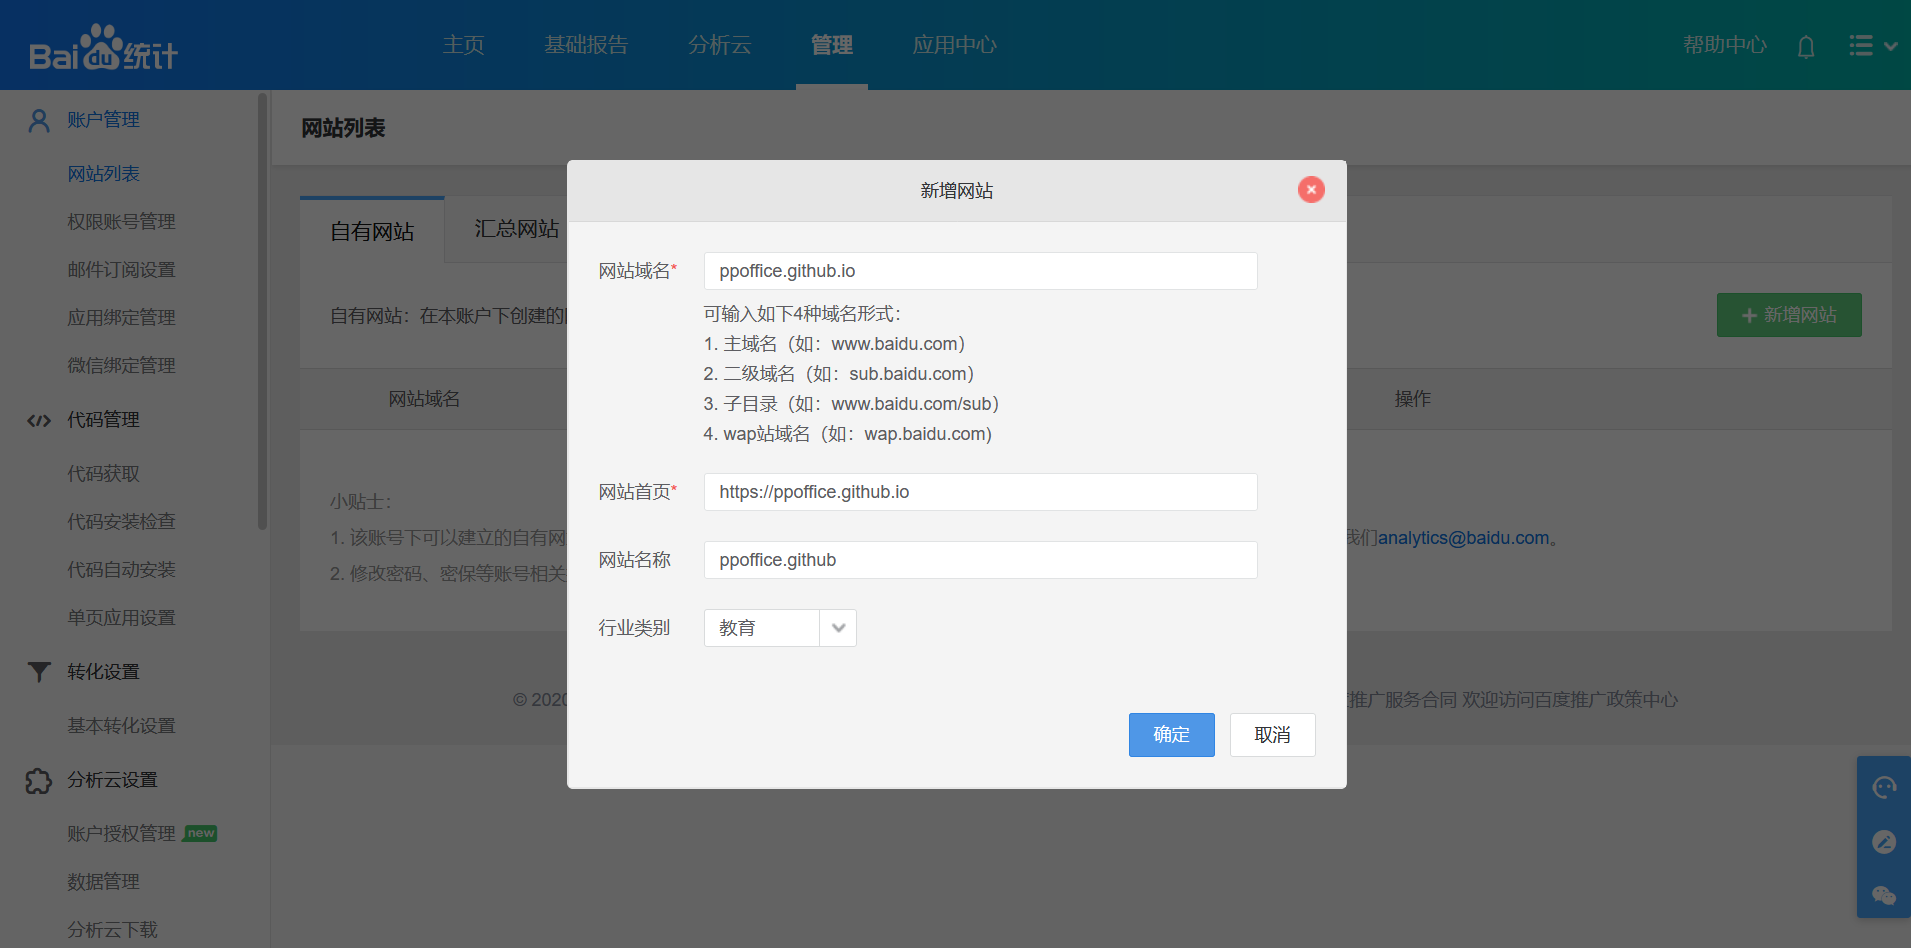 Add Site - Baidu Analytics